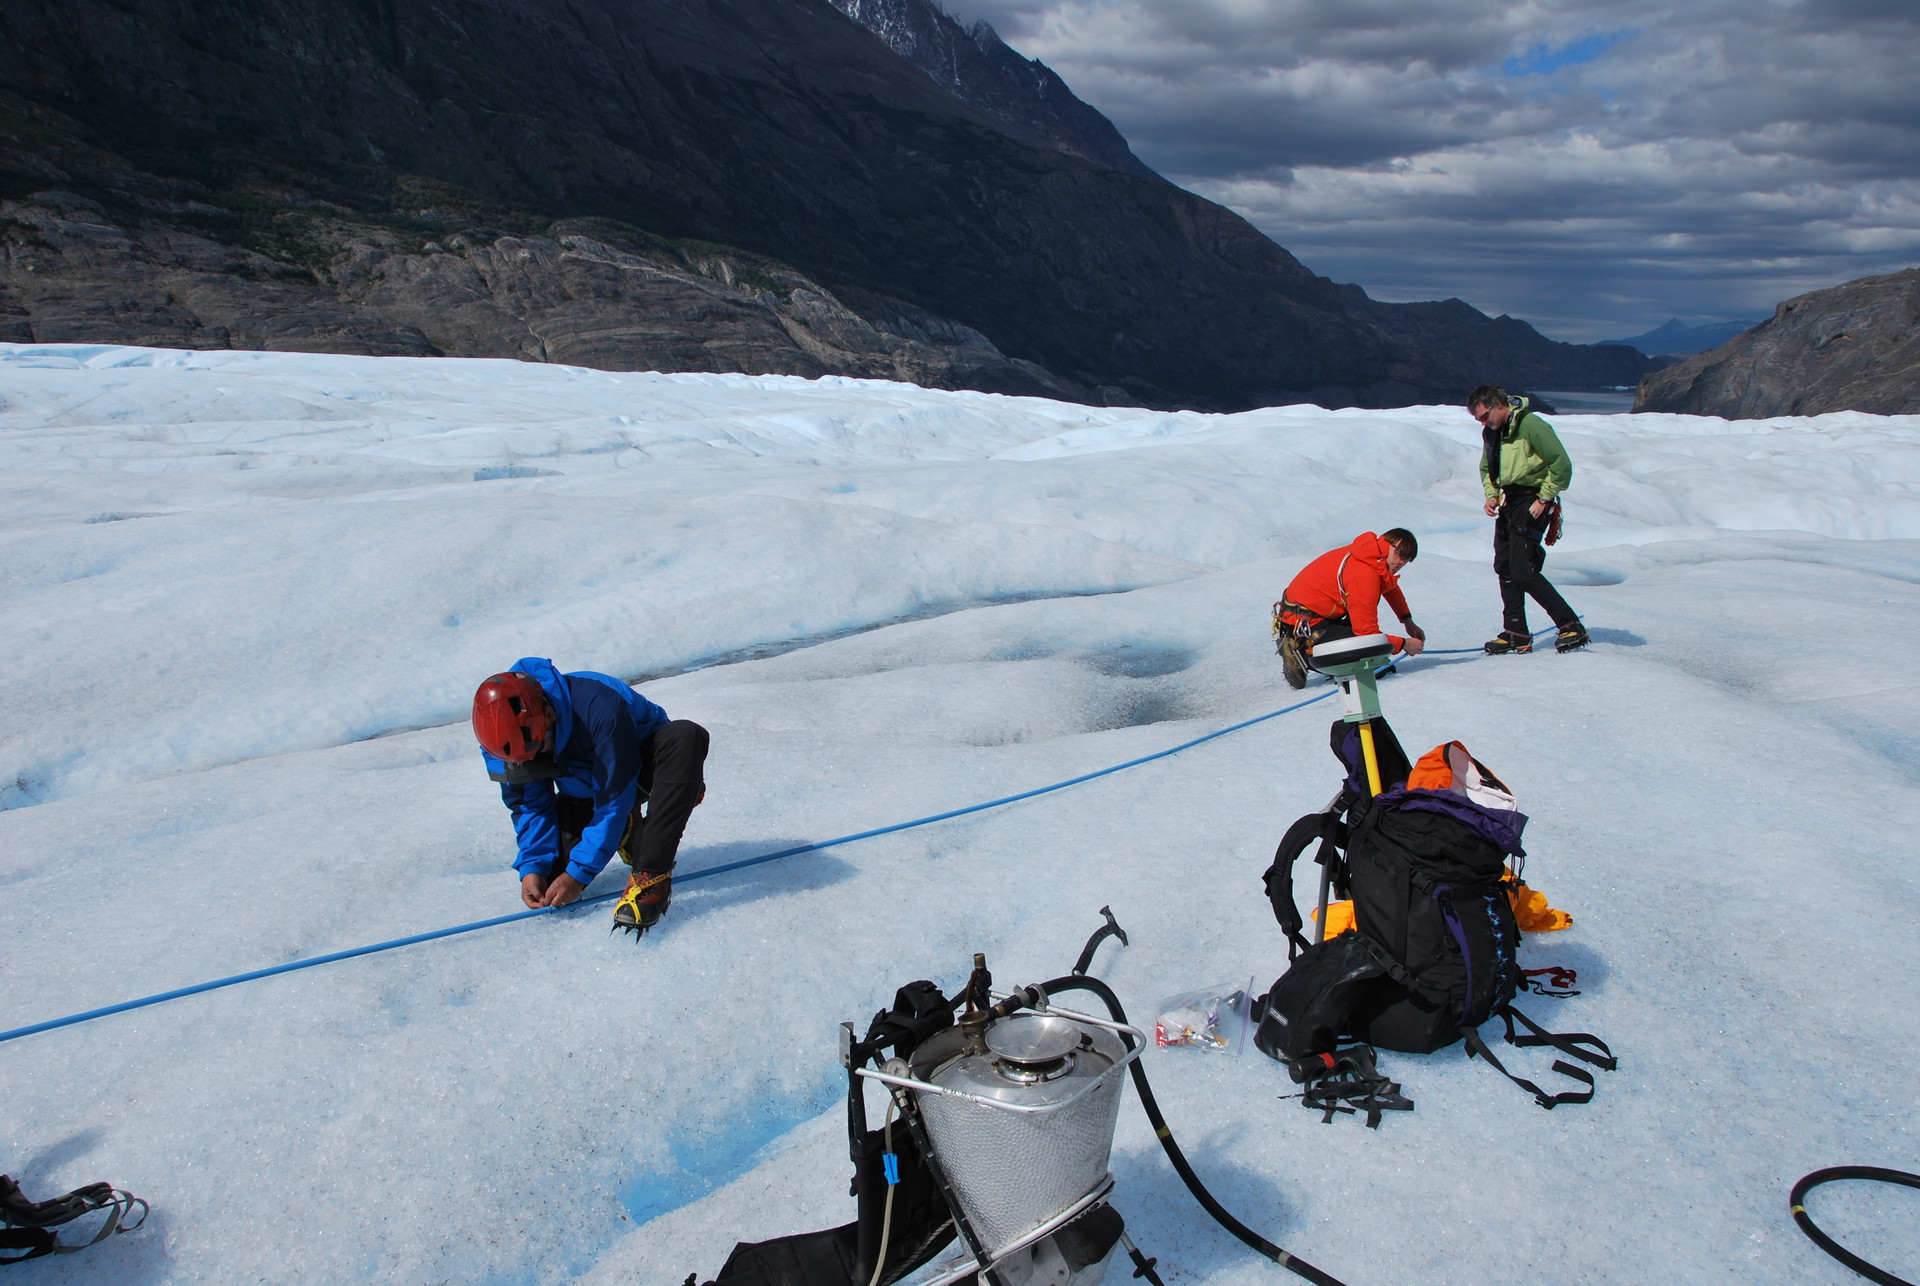 Regelmäßig vermessen Forscher der Humboldt Universität Berlin den schmelzenden Grey Gletscher in den südamerikanischen Alpen, um Daten für den globalen Klimawandel zu gewinnen.
(c) ZDF/Christopher Gerisch